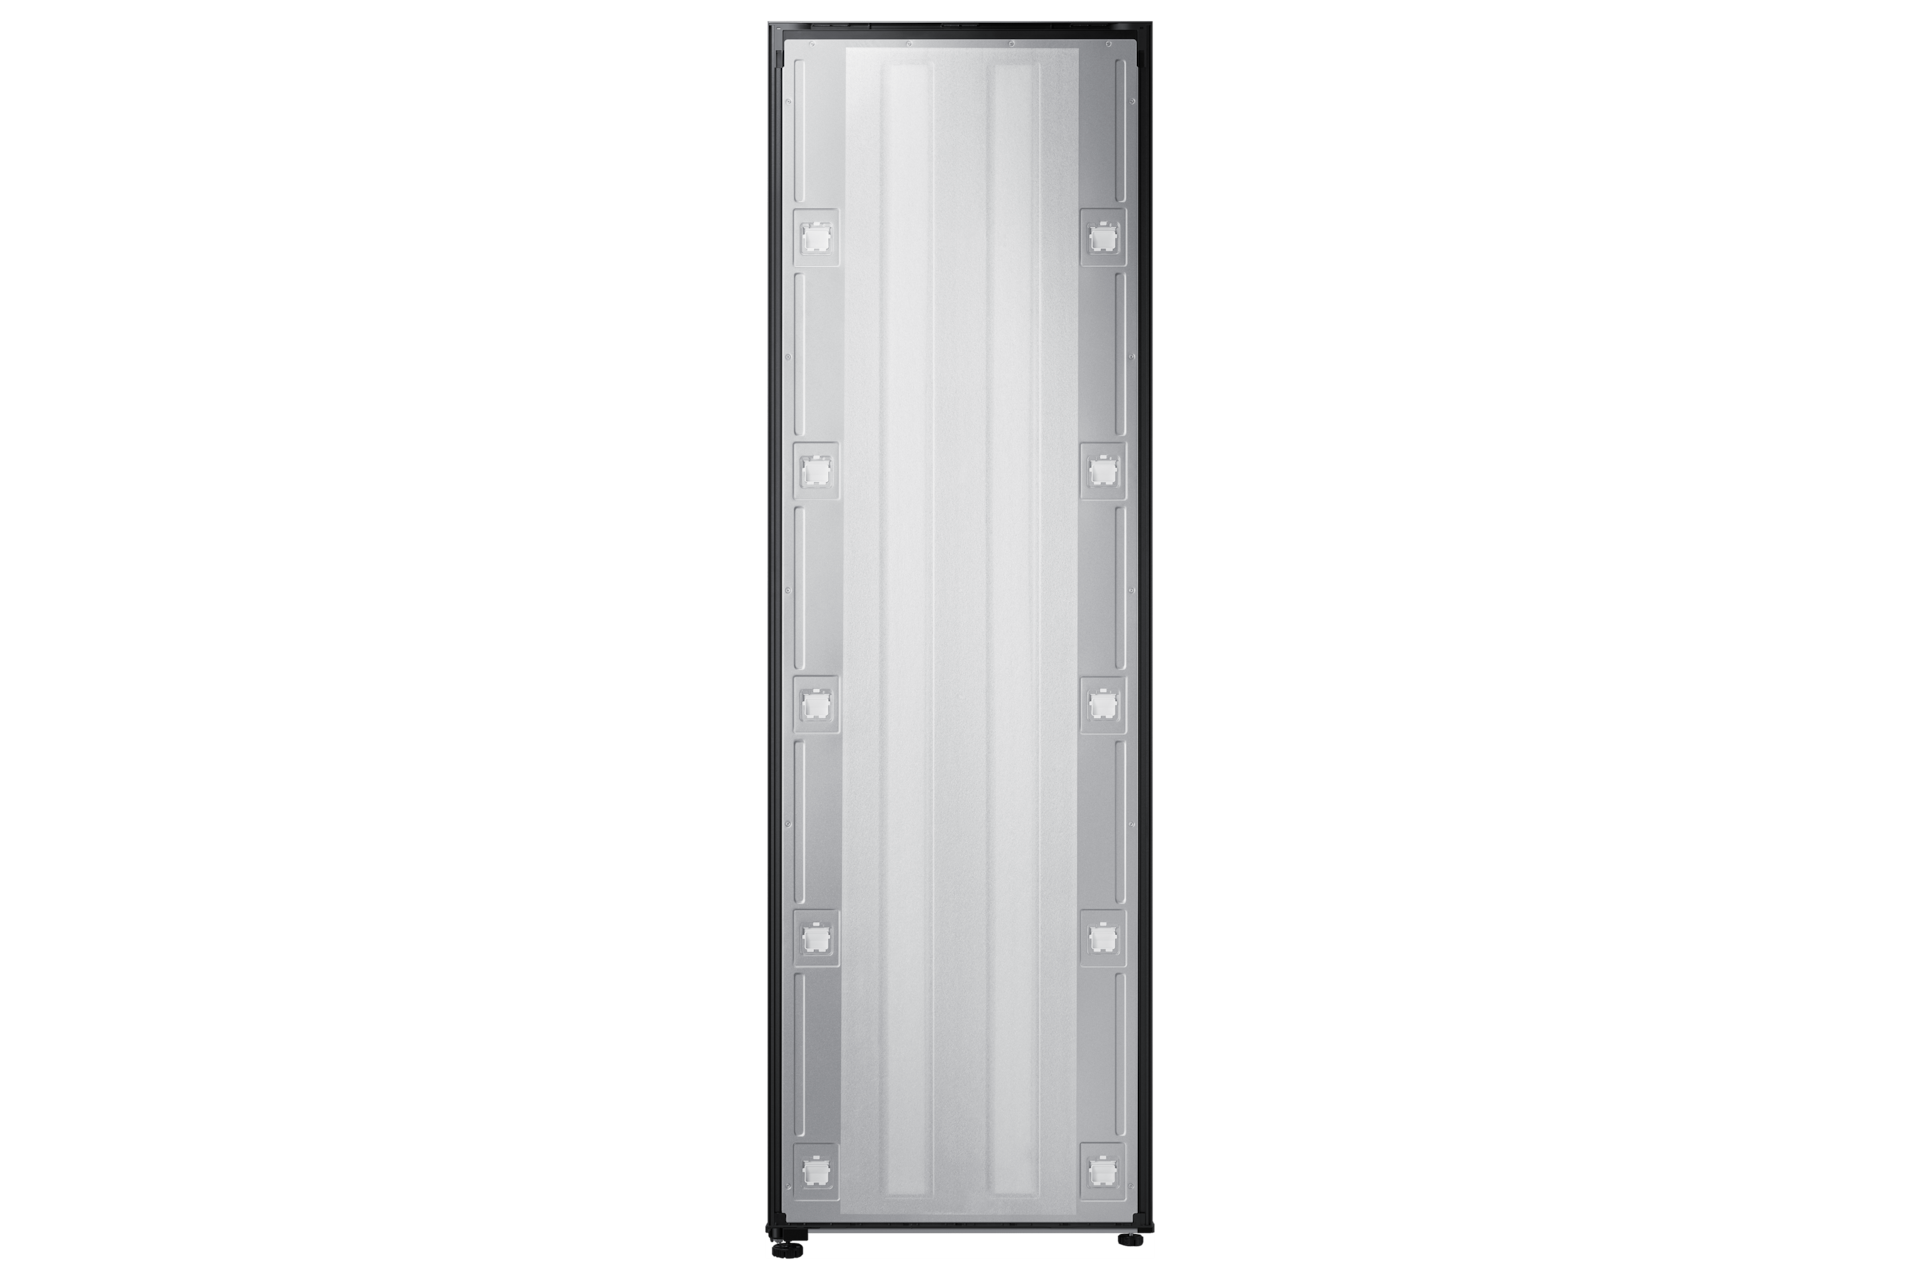 Image of Samsung 24  BESPOKE 1-Door Column Freezer with Convertible Mode